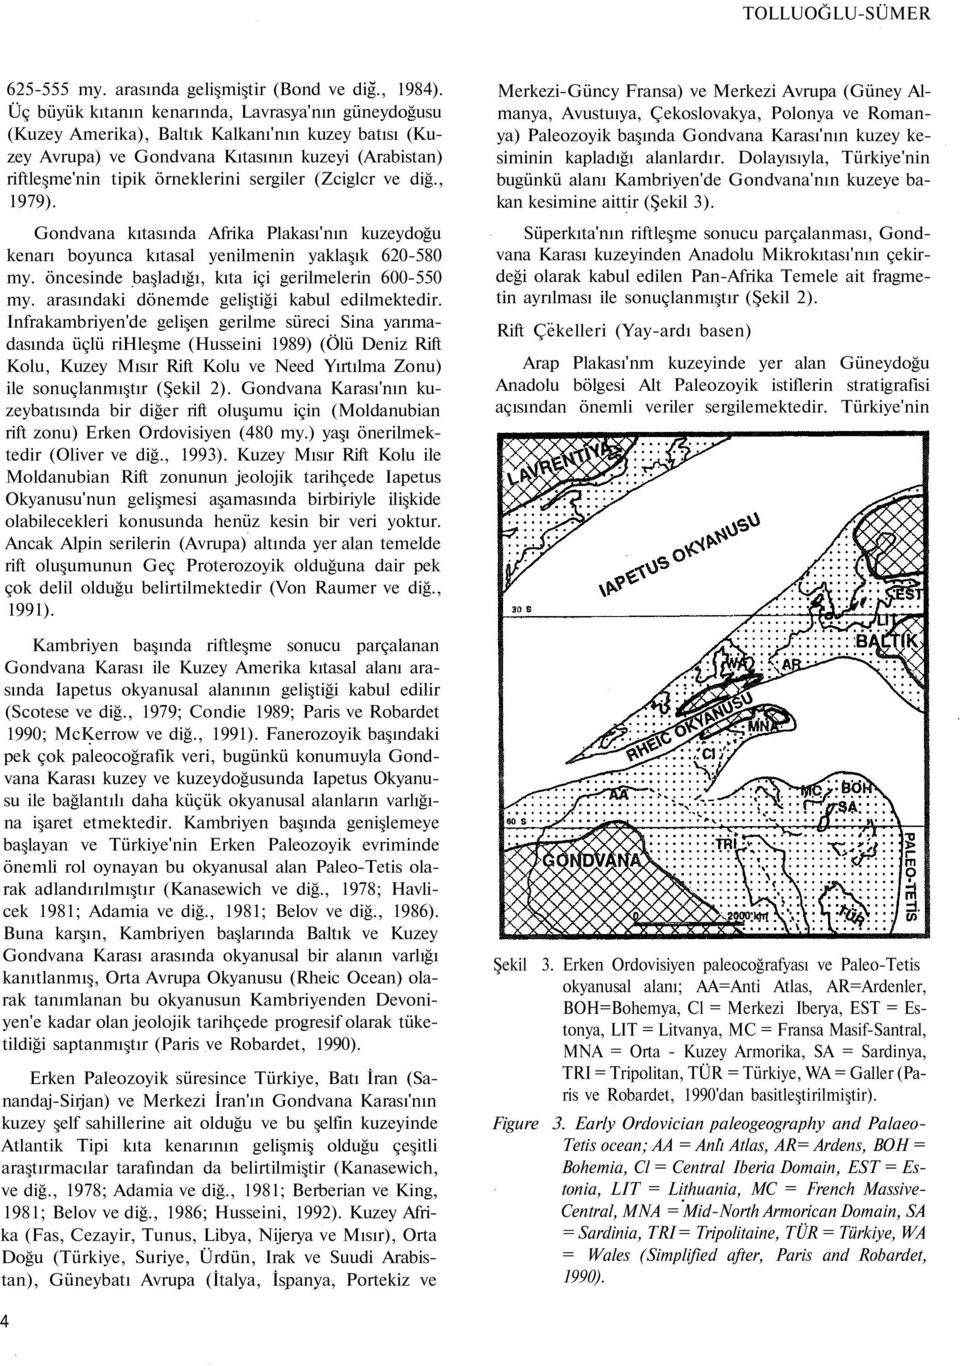 (Zciglcr ve diğ., 1979). Gondvana kıtasında Afrika Plakası'nın kuzeydoğu kenarı boyunca kıtasal yenilmenin yaklaşık 620-580 my. öncesinde başladığı, kıta içi gerilmelerin 600-550 my.